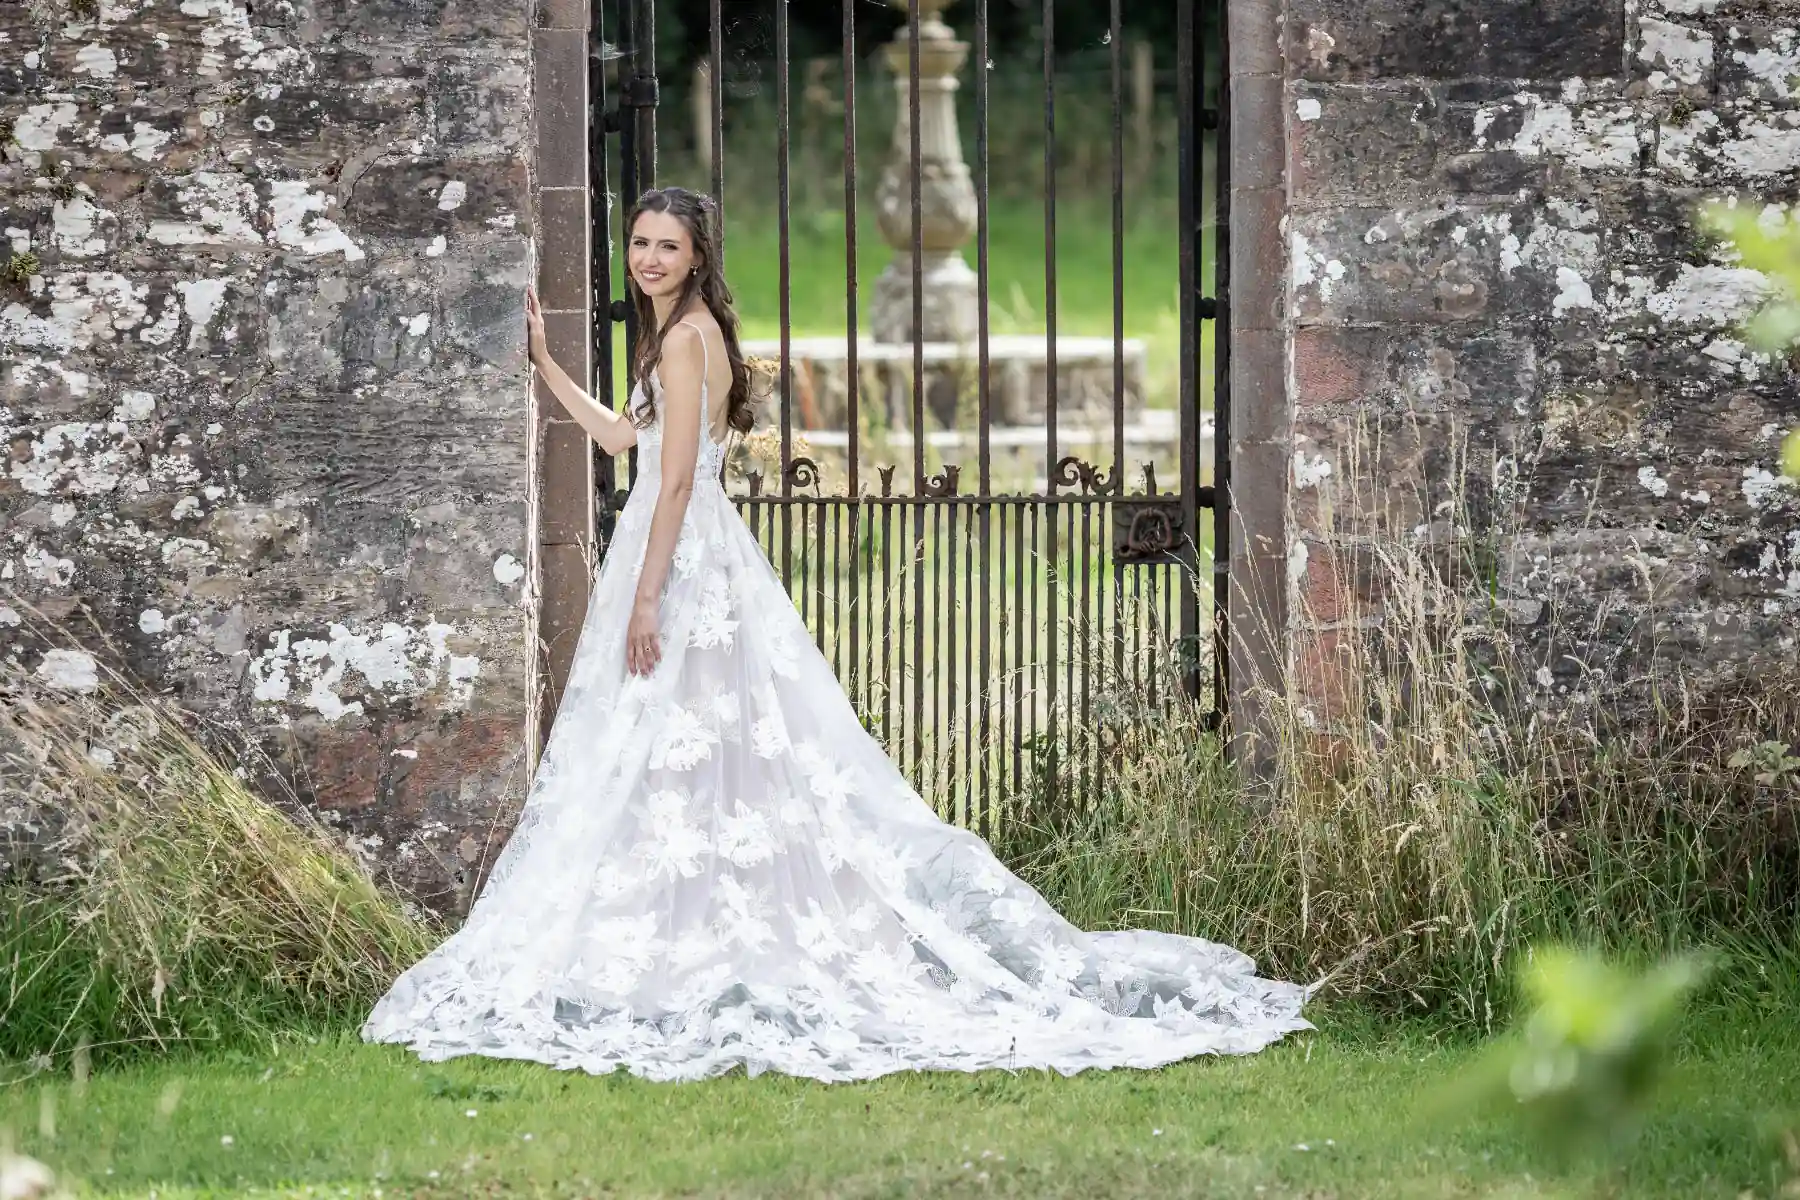 Walled Garden bride in white dress